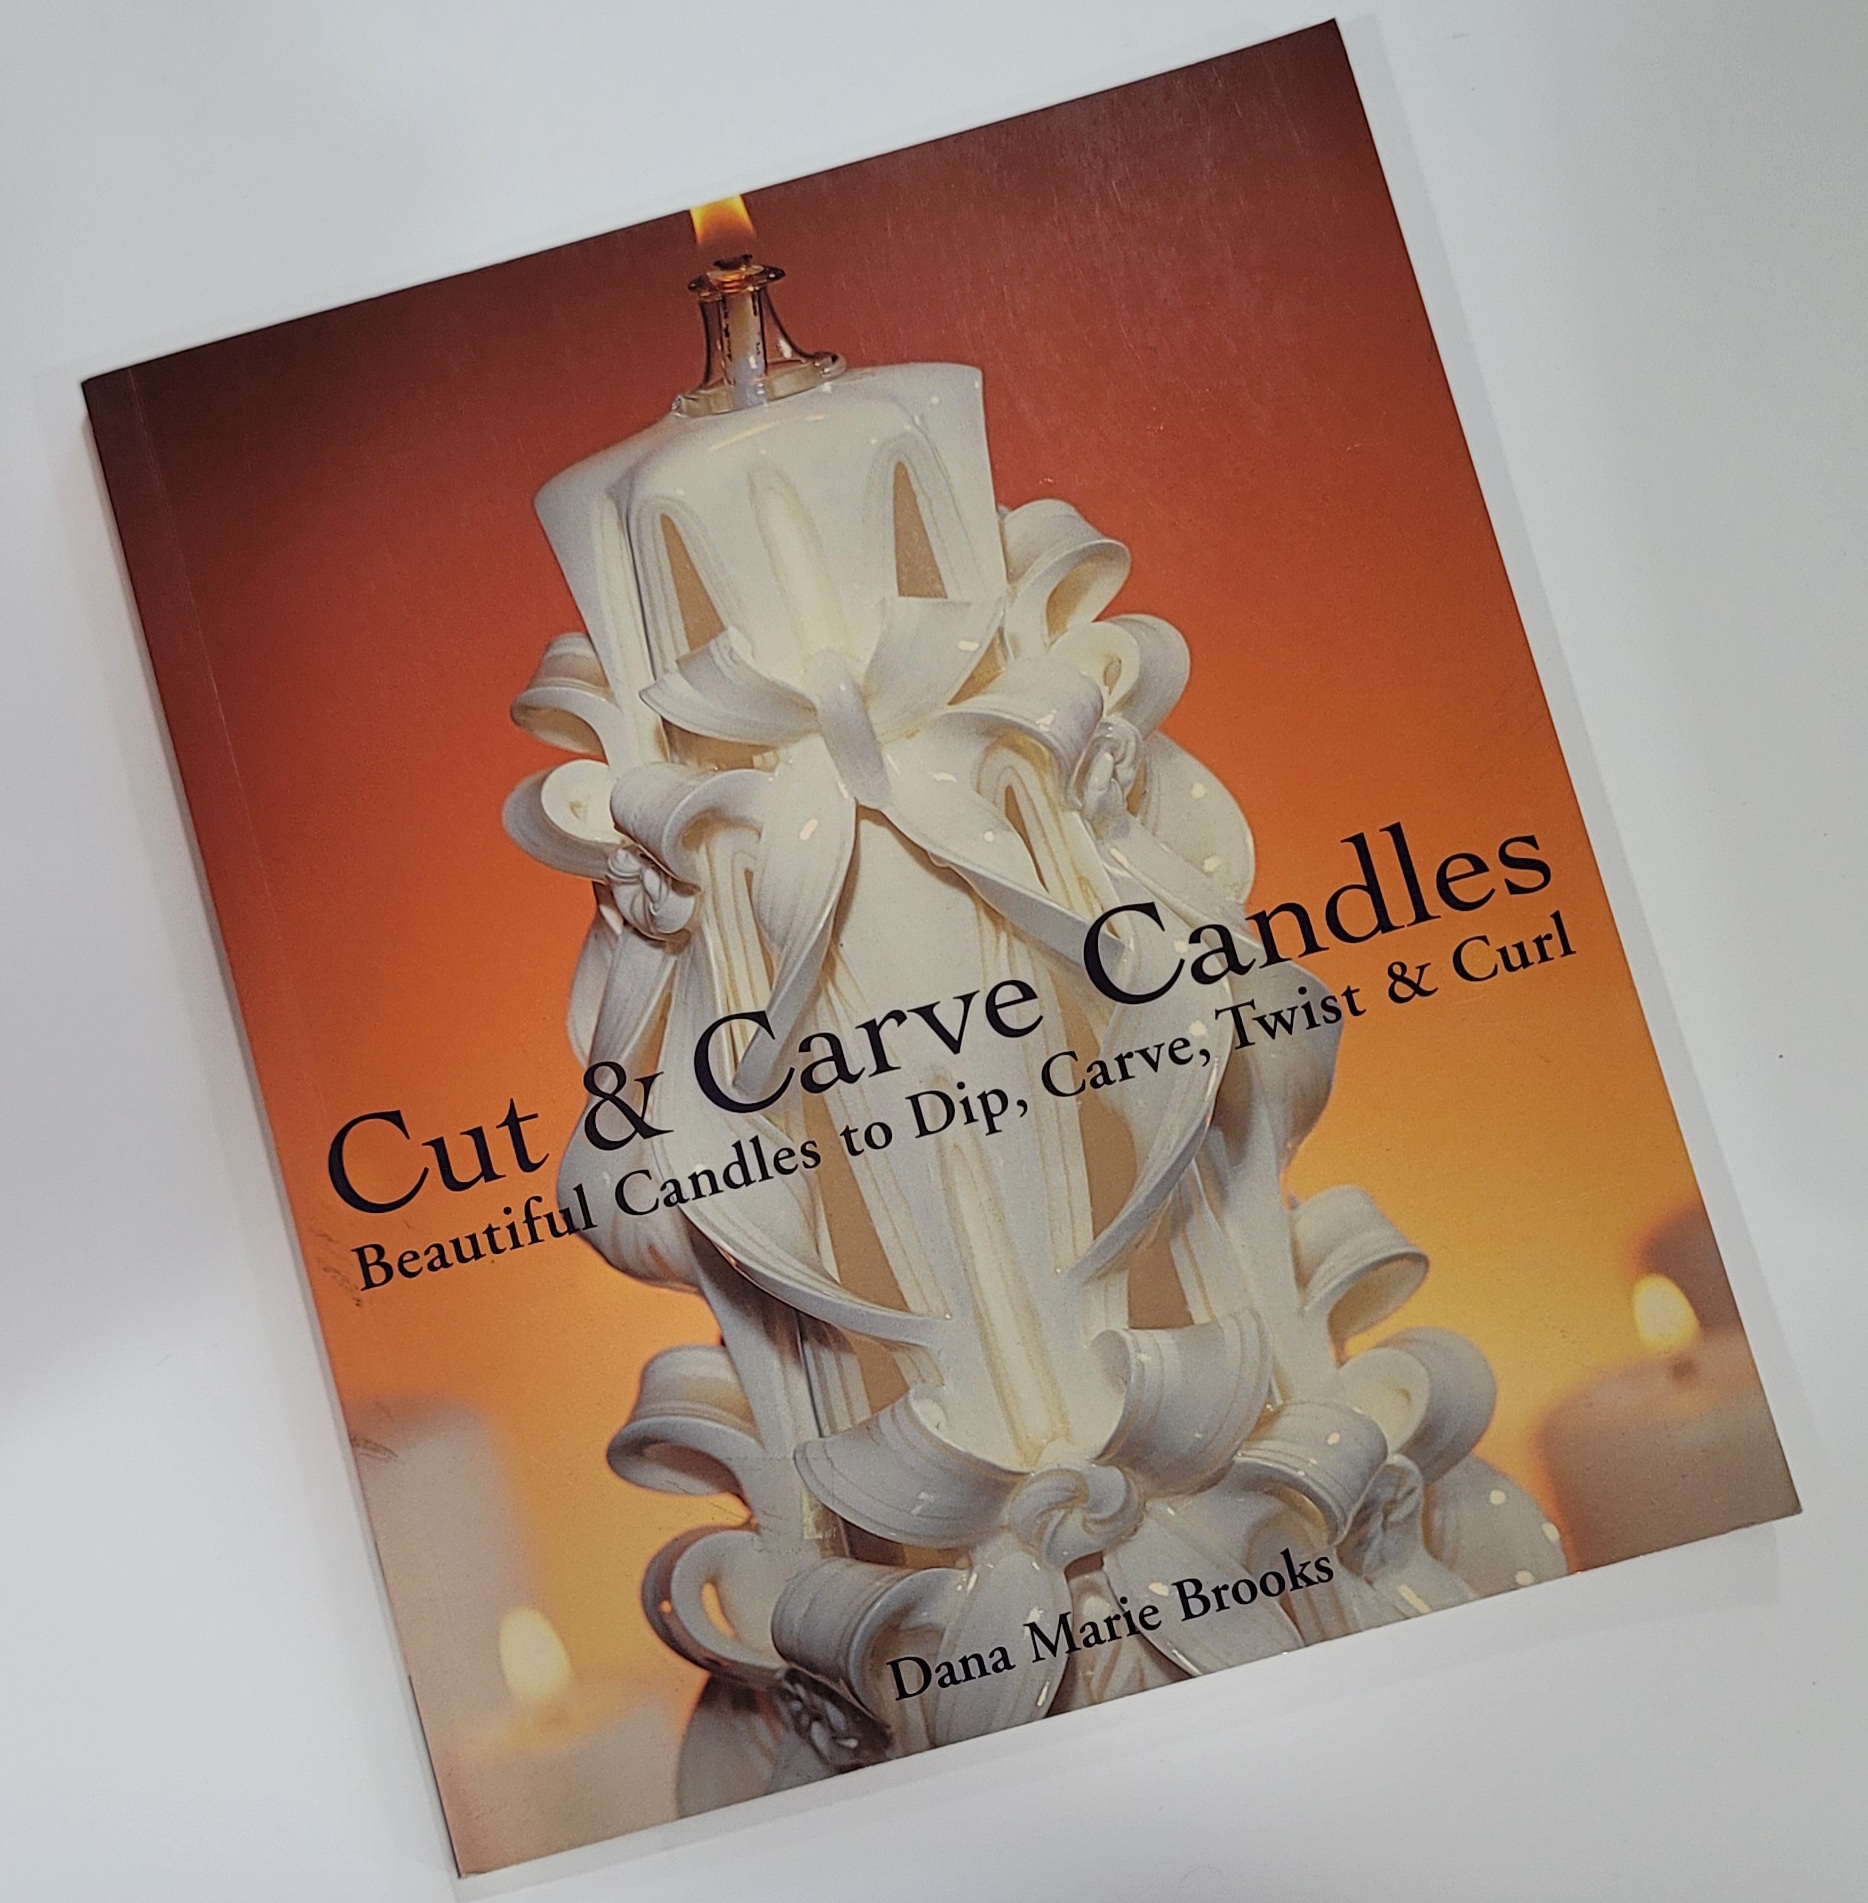 Cut & Carve Candles